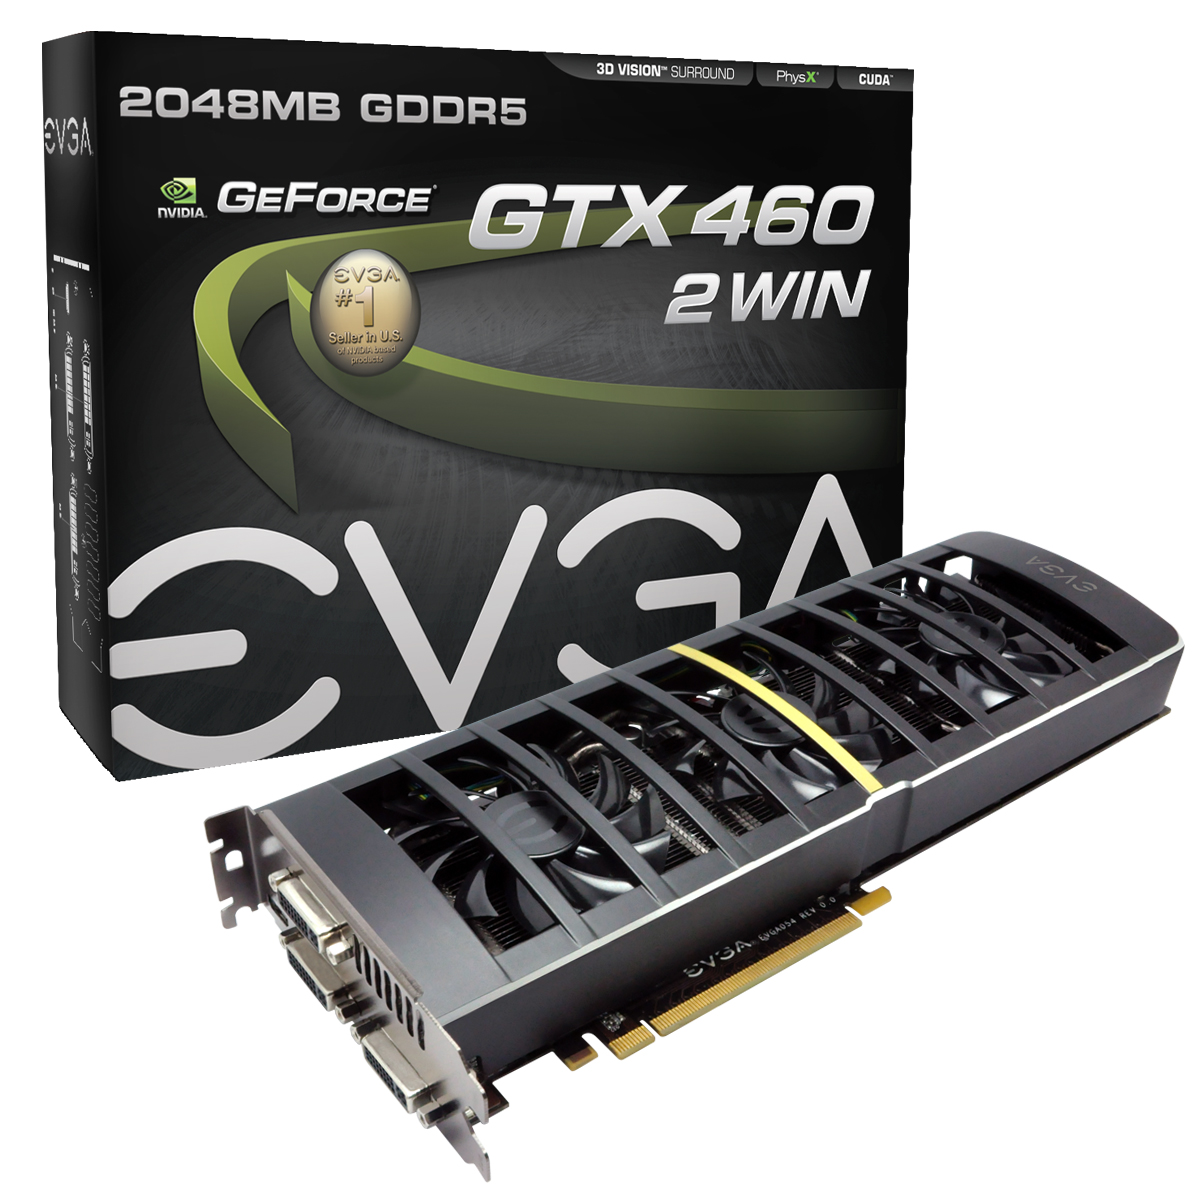 Immagine pubblicata in relazione al seguente contenuto: Sul mercato europeo la dual-gpu EVGA GeForce GTX 460 2 WIN | Nome immagine: news14967_3.jpg